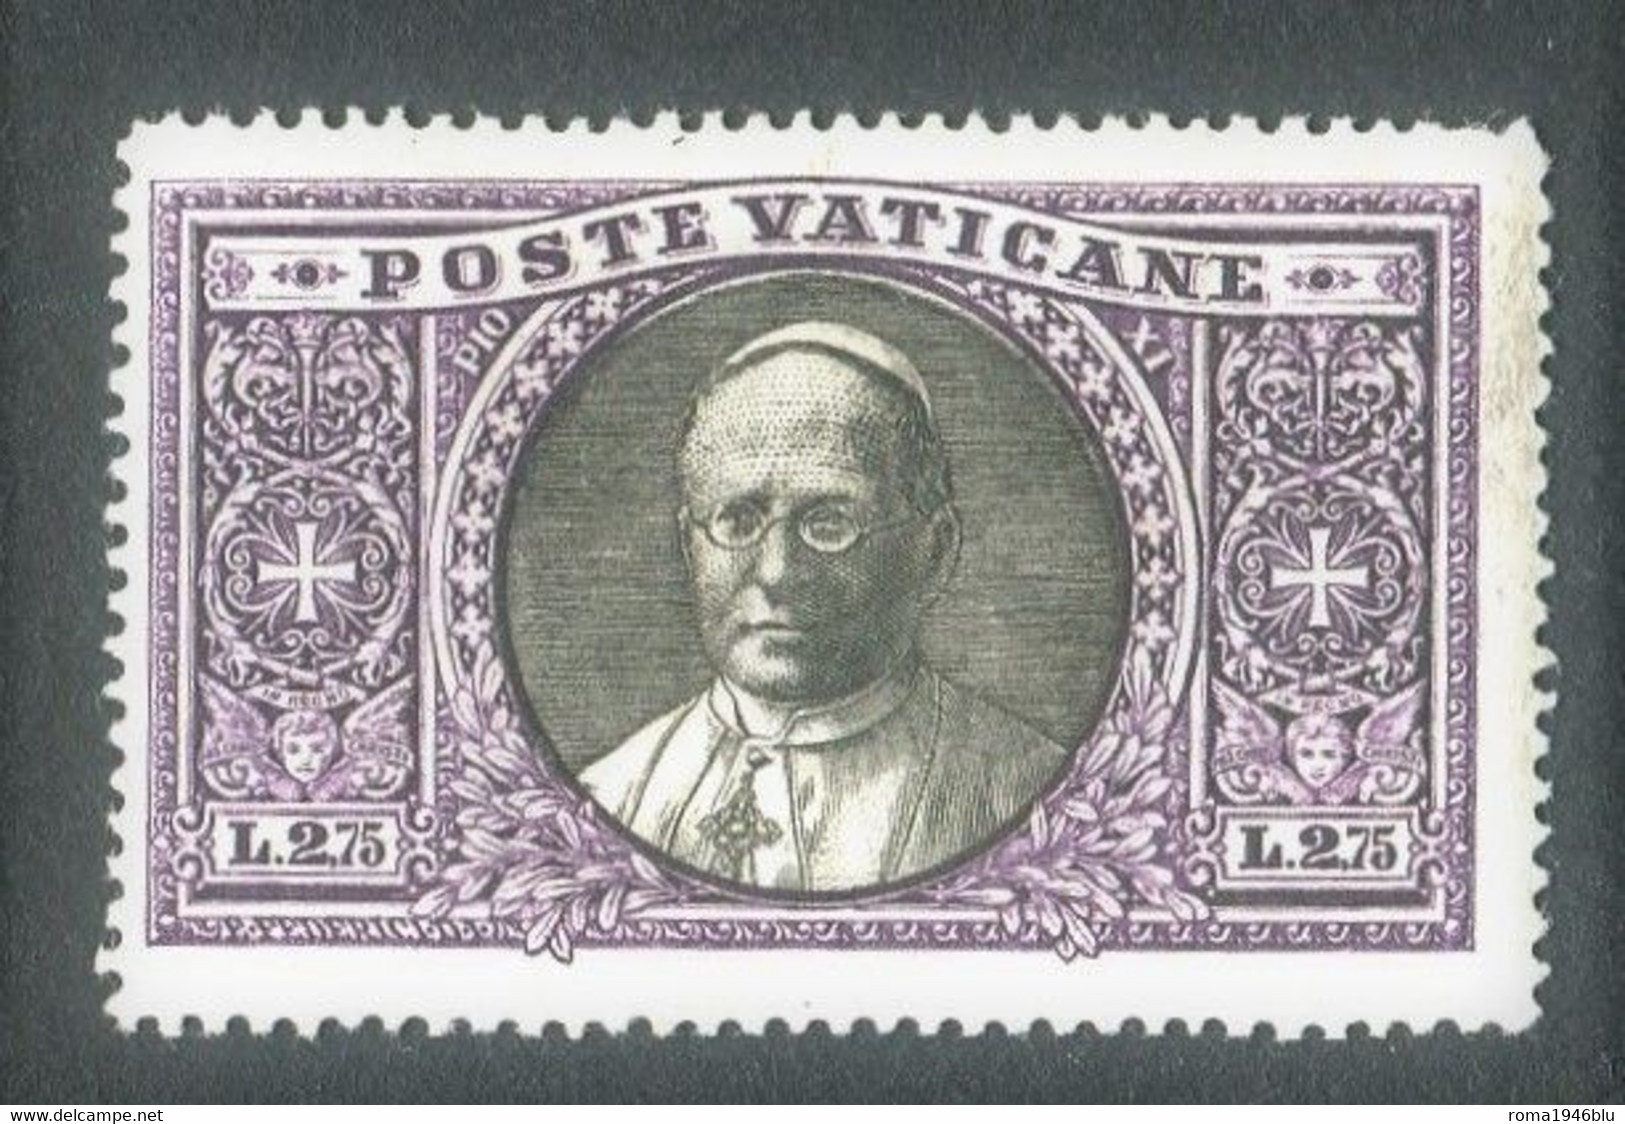 VATICANO 1933 GIARDINI E MEDAGLIONI 2,75 LIRE * GOMMA ORIGINALE - Unused Stamps